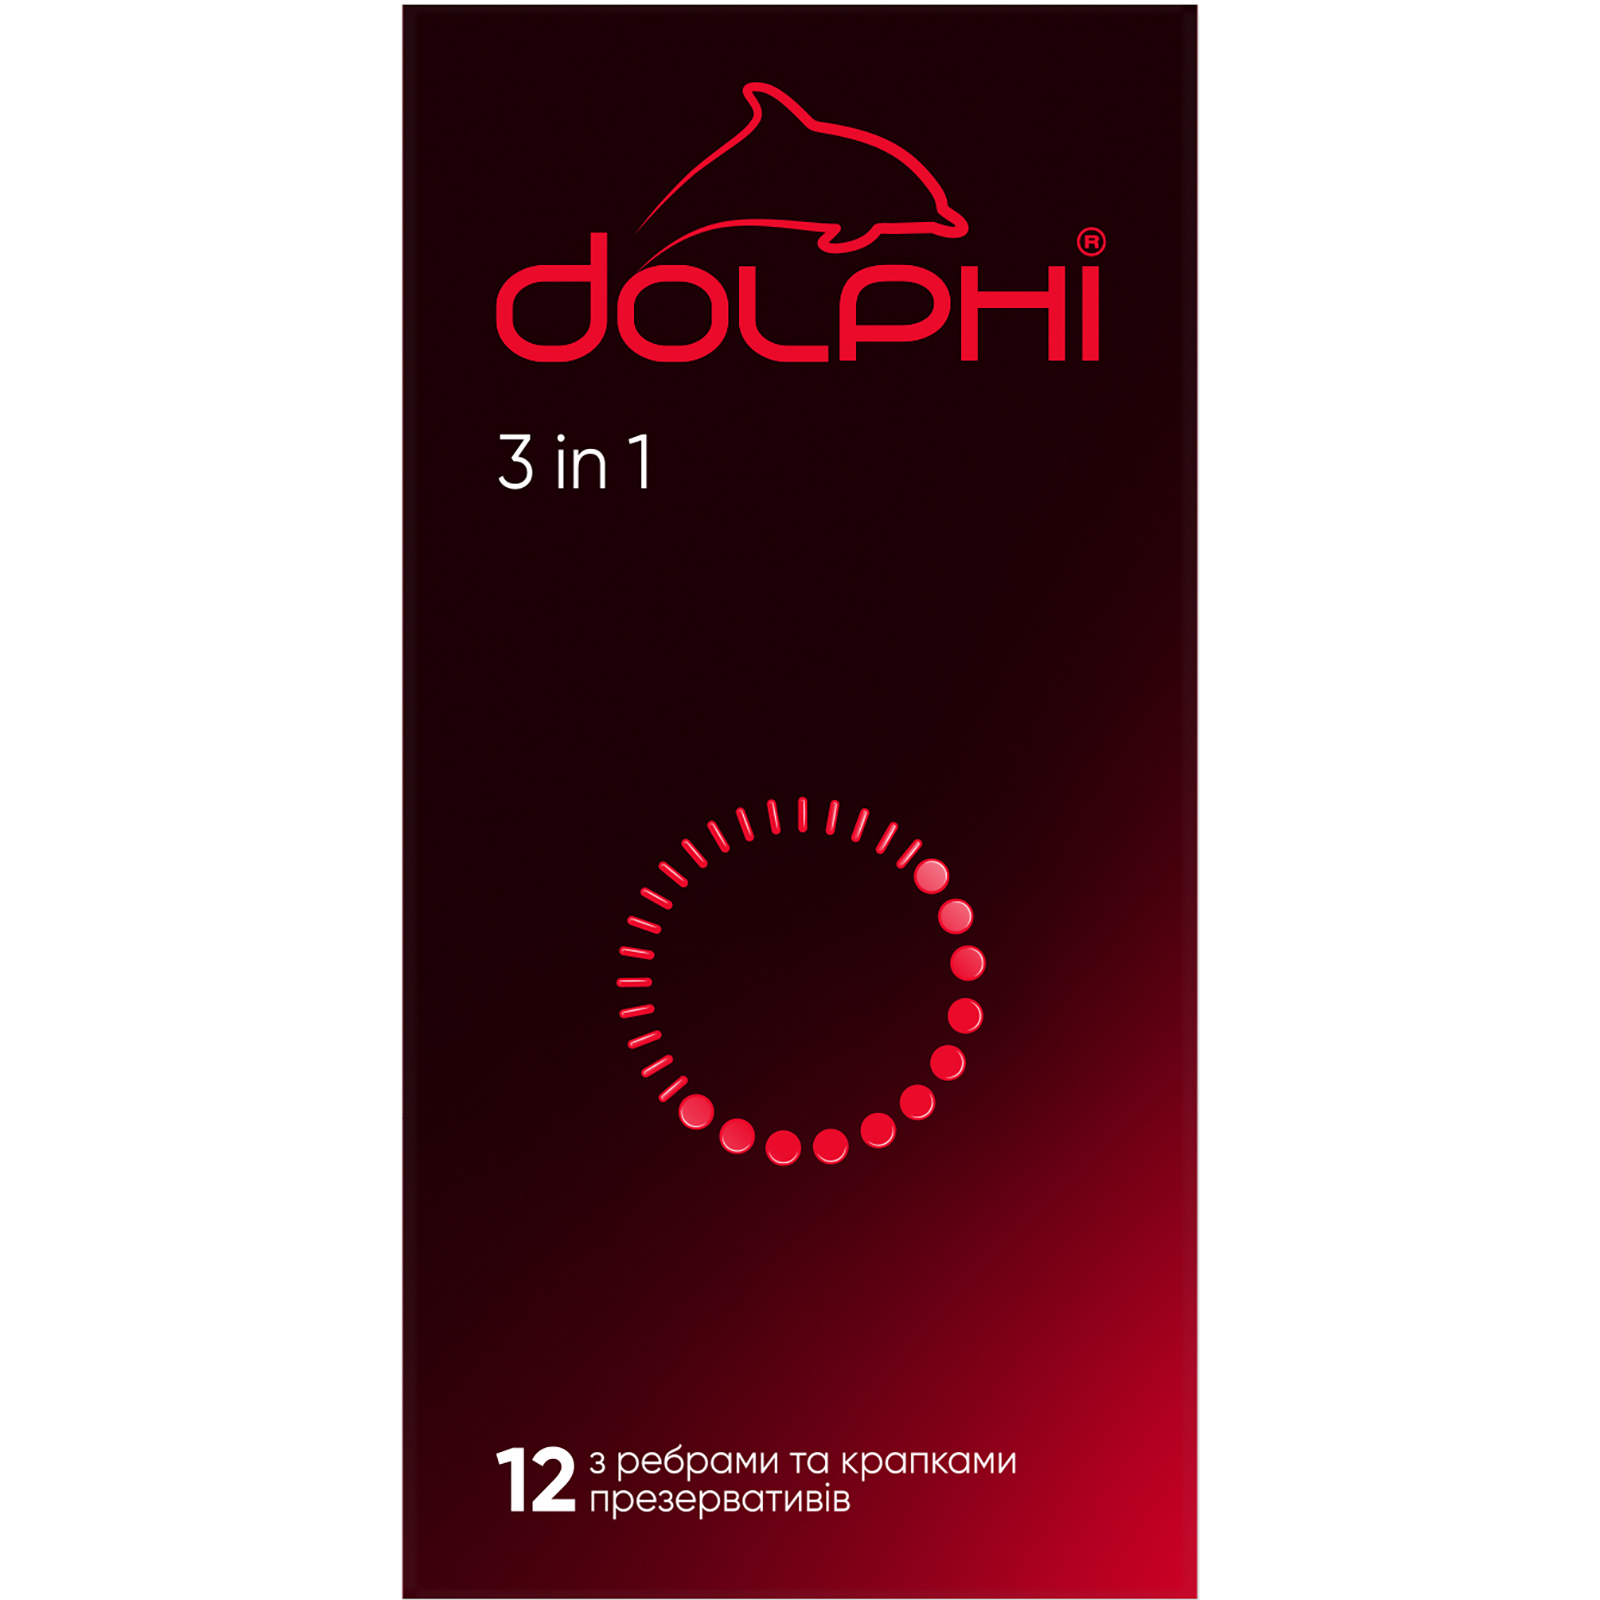 Презервативы Dolphi 3 in 1 3 шт. (4820144770579)